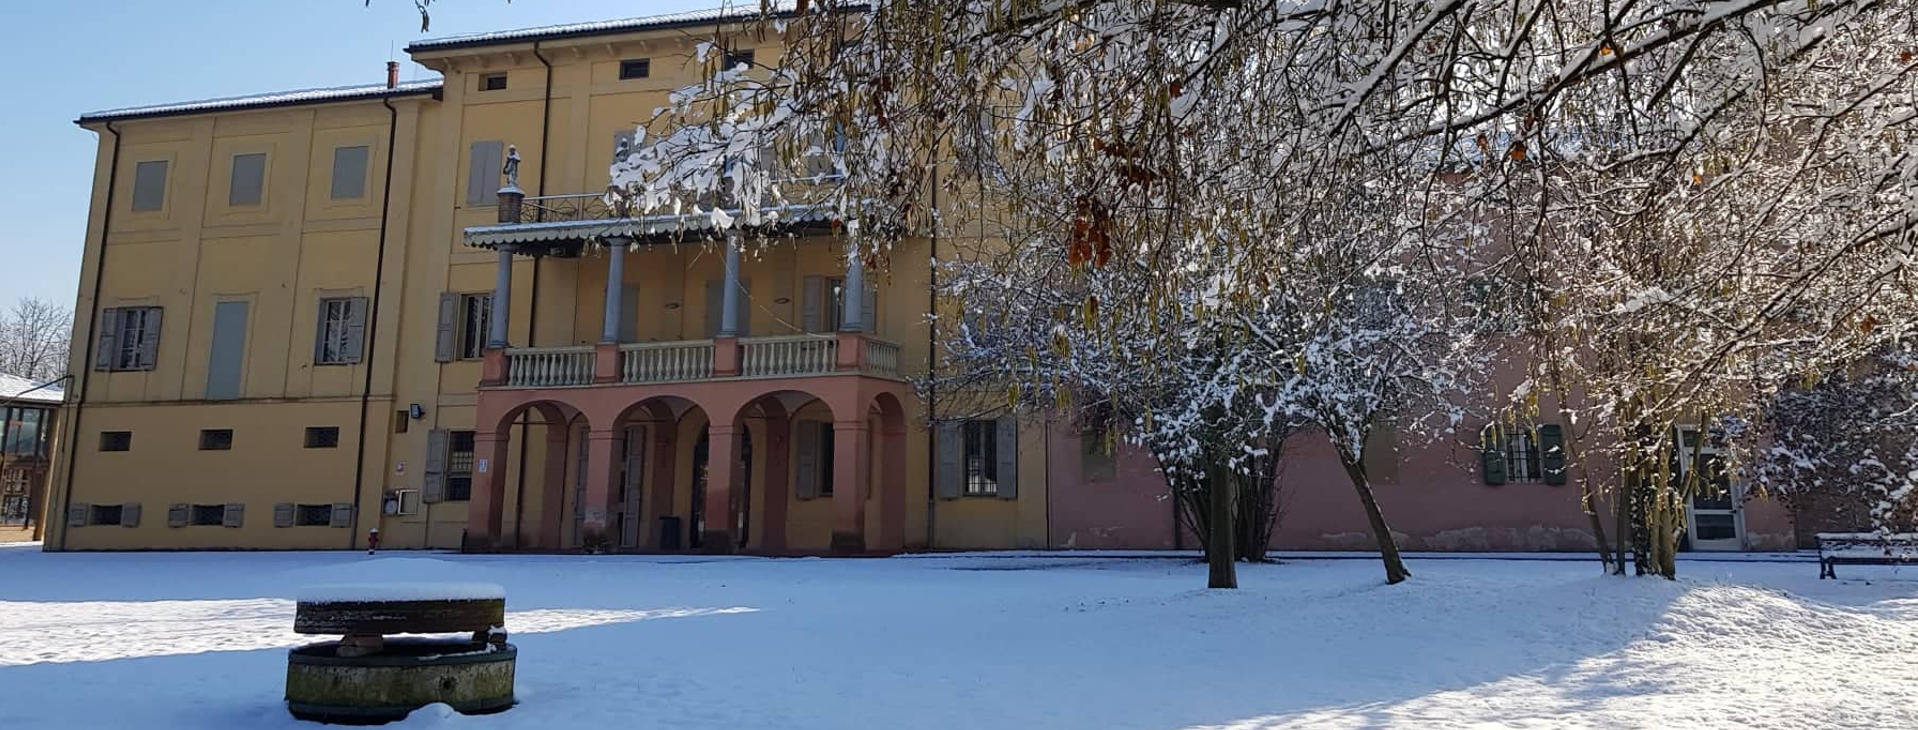 Villa Smeraldi con neve